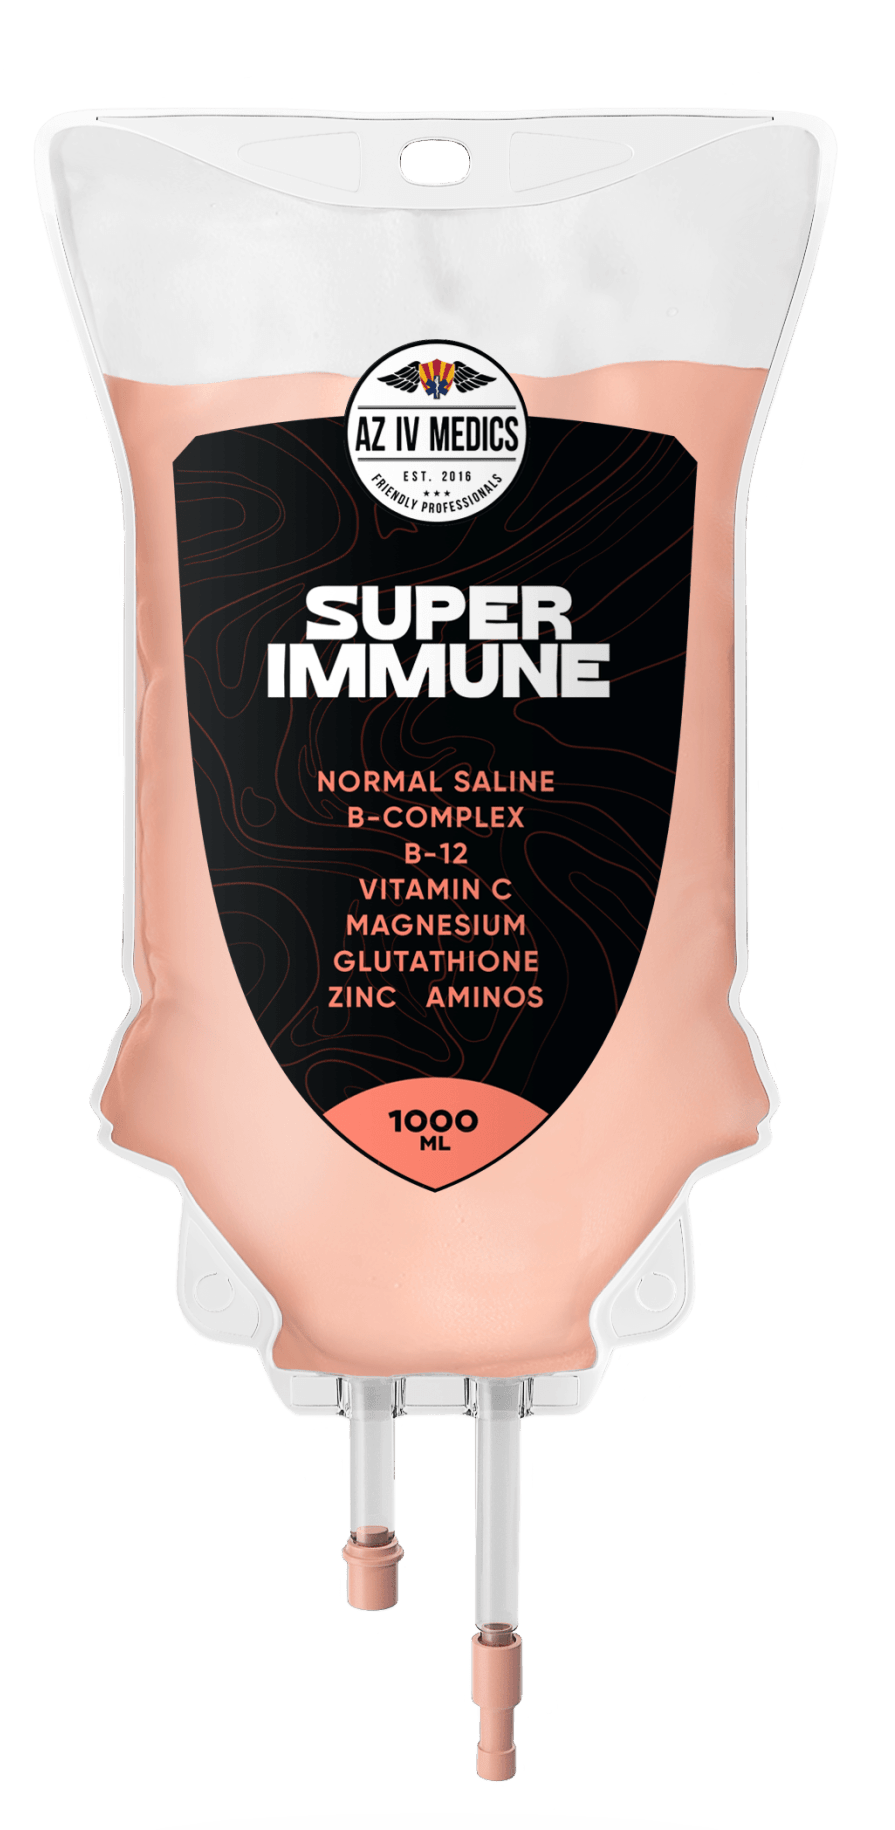 Super Immune IV